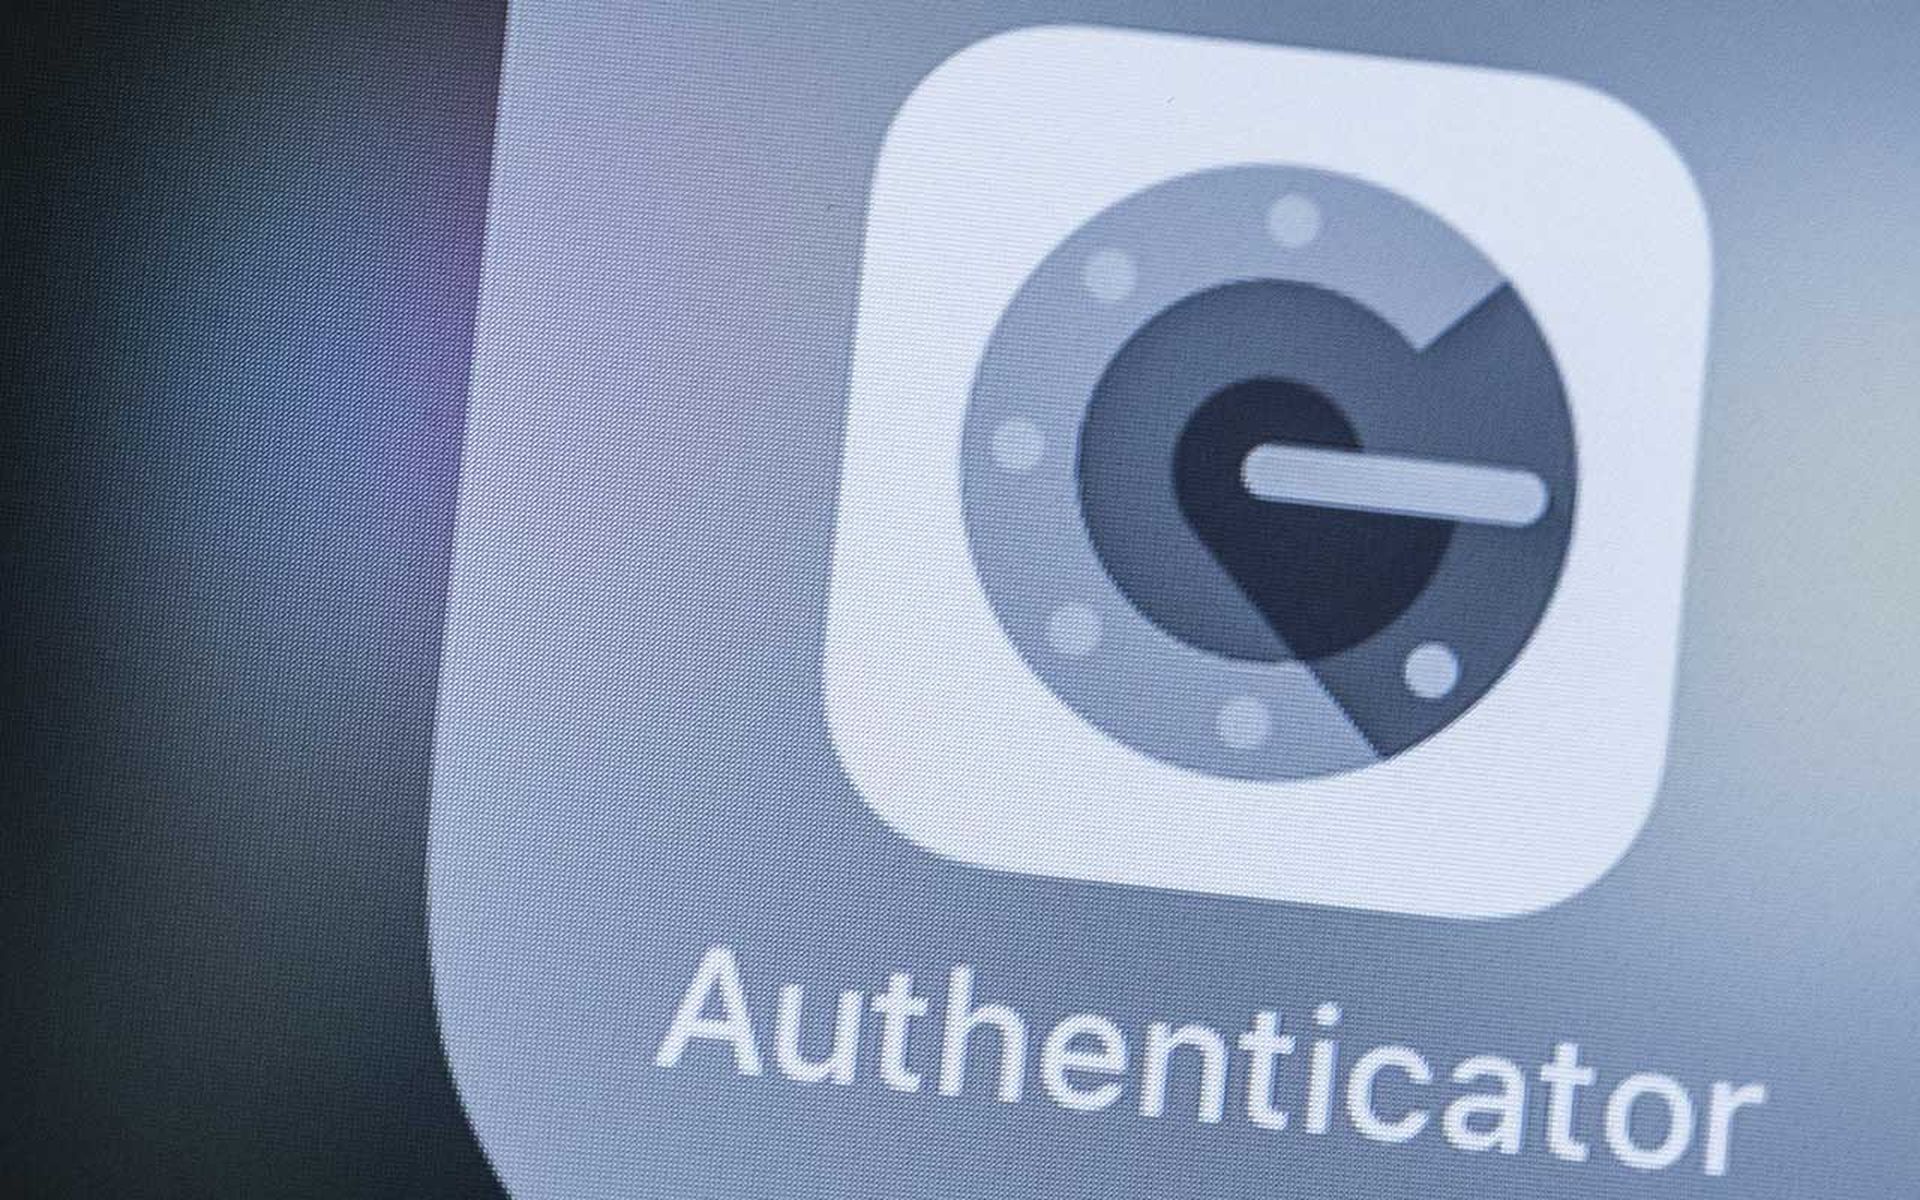 Google Authenticator app icon